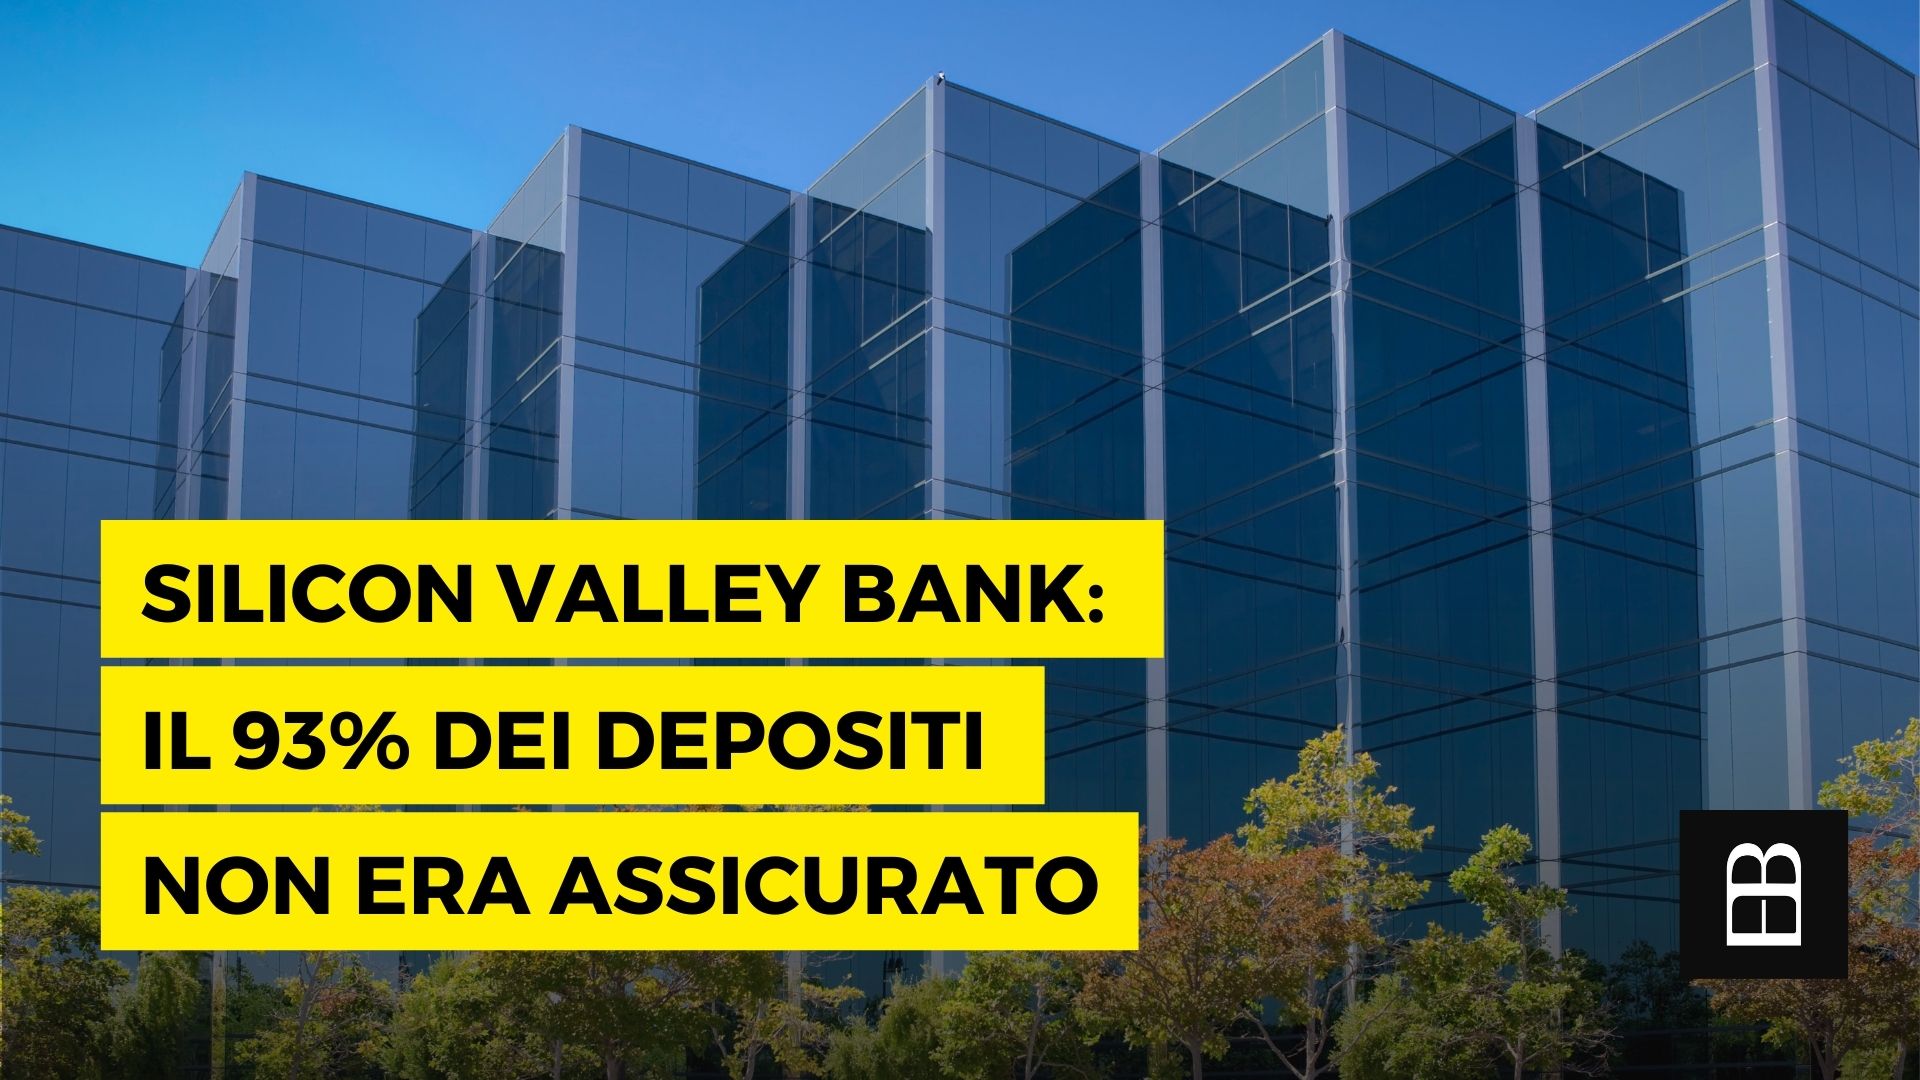 Silicon Valley Bank: il 93% dei depositi non era assicurato